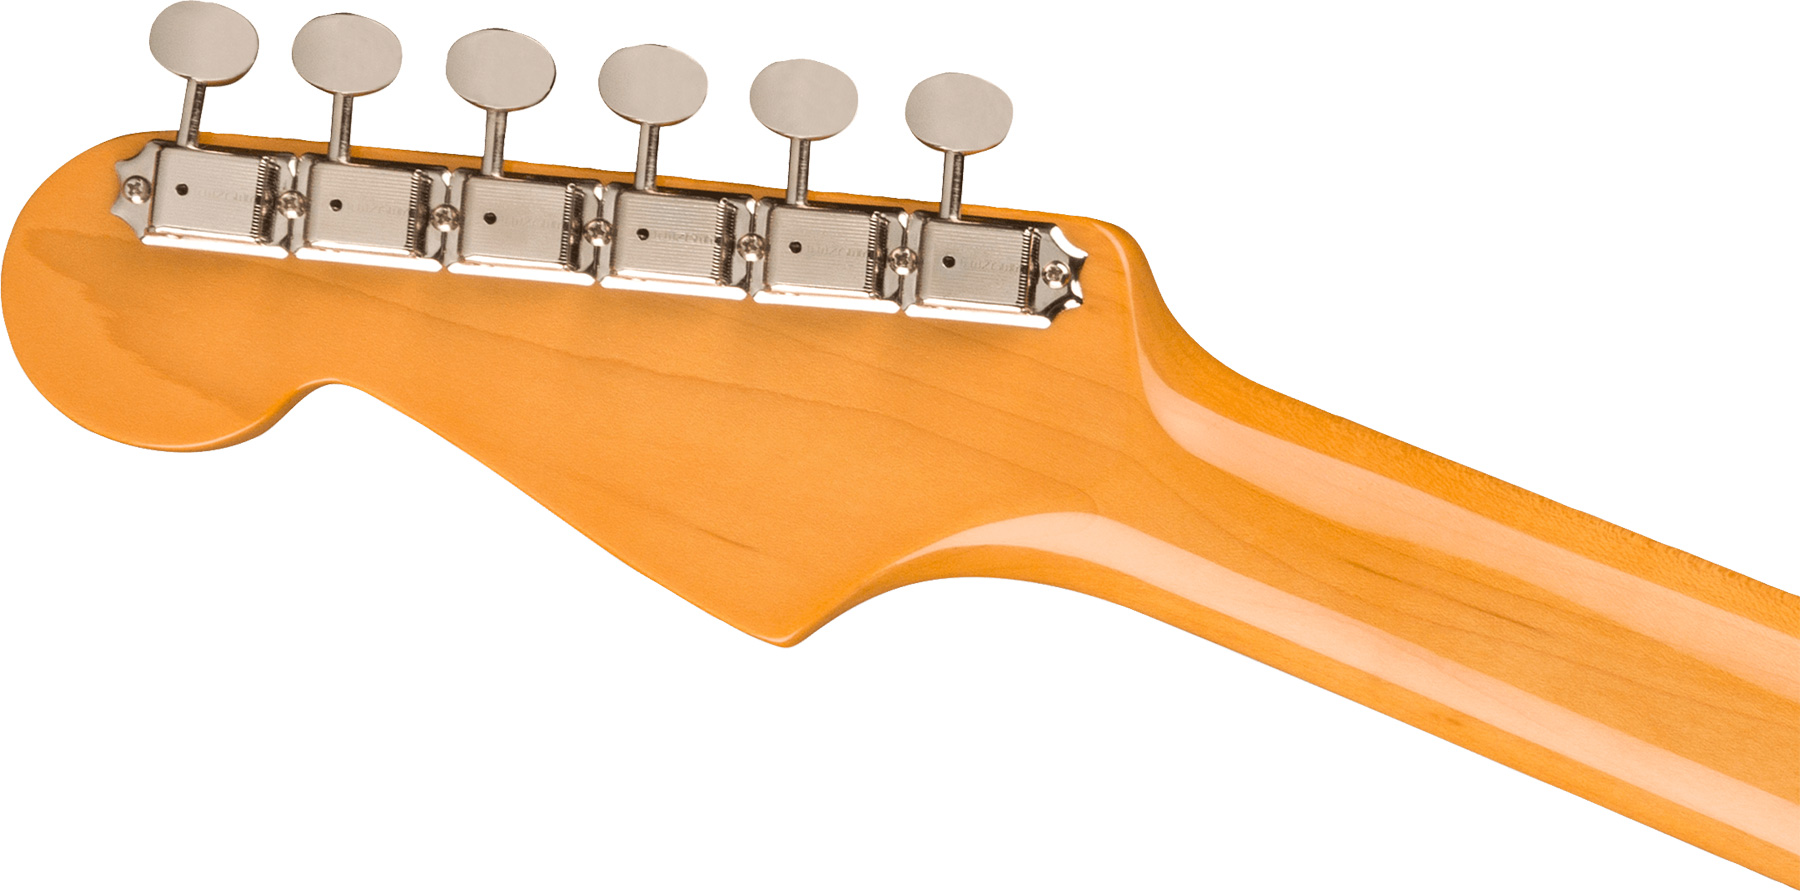 Fender Strat 1961 American Vintage Ii Usa 3s Trem Rw - 3-color Sunburst - Str shape electric guitar - Variation 3